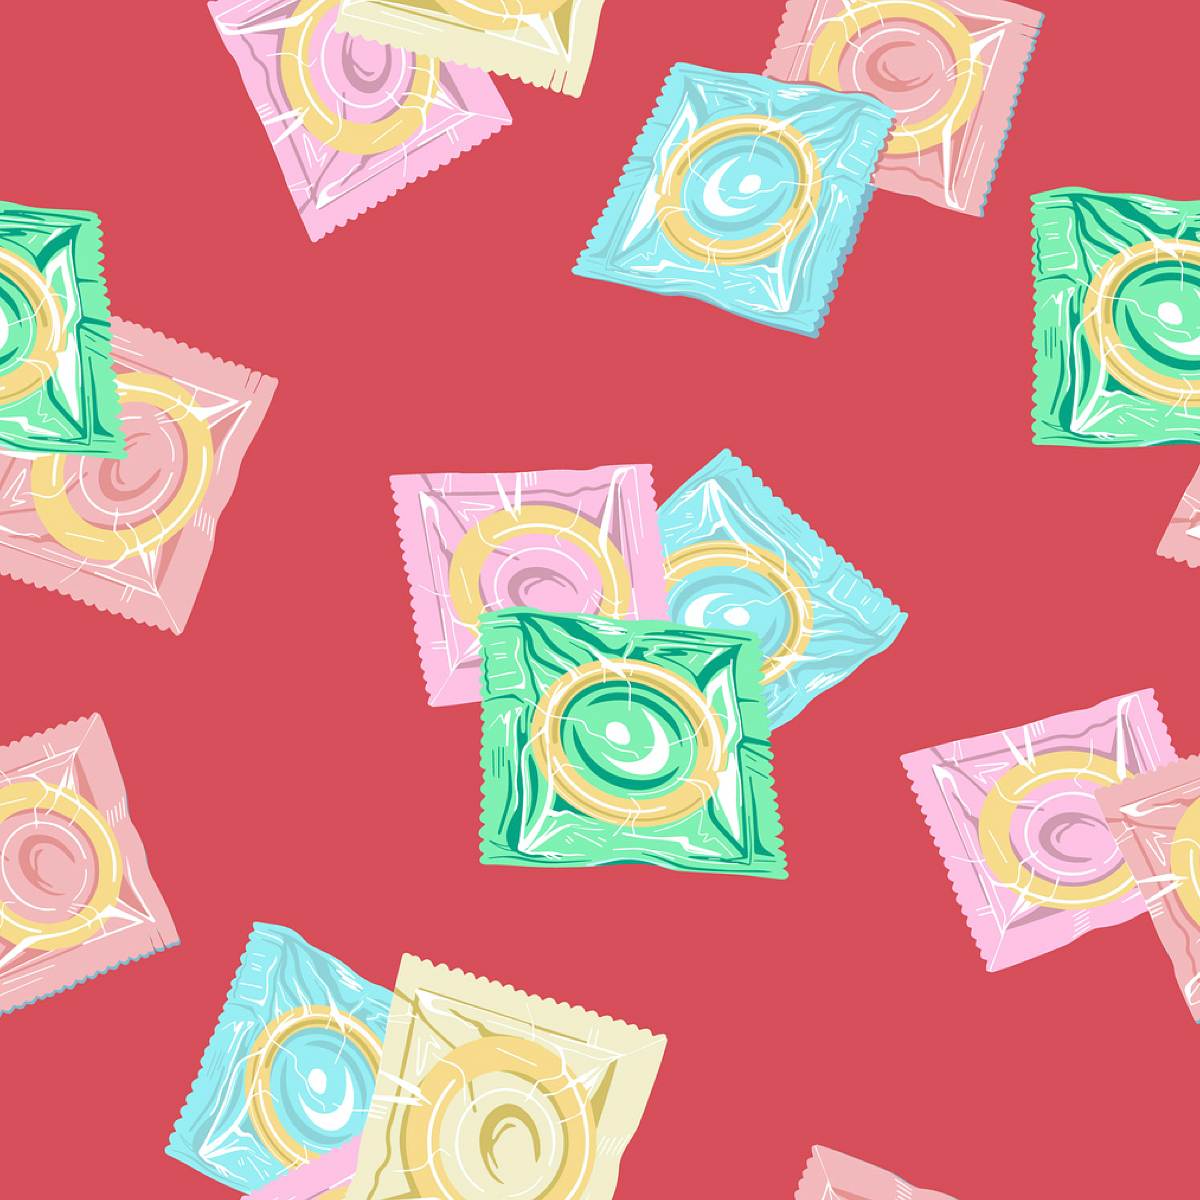 Es kommt auf die Kondomgröße an: Ein Kondom ist nur dann sicher, wenn es richtig angewendet wird und perfekt passt!